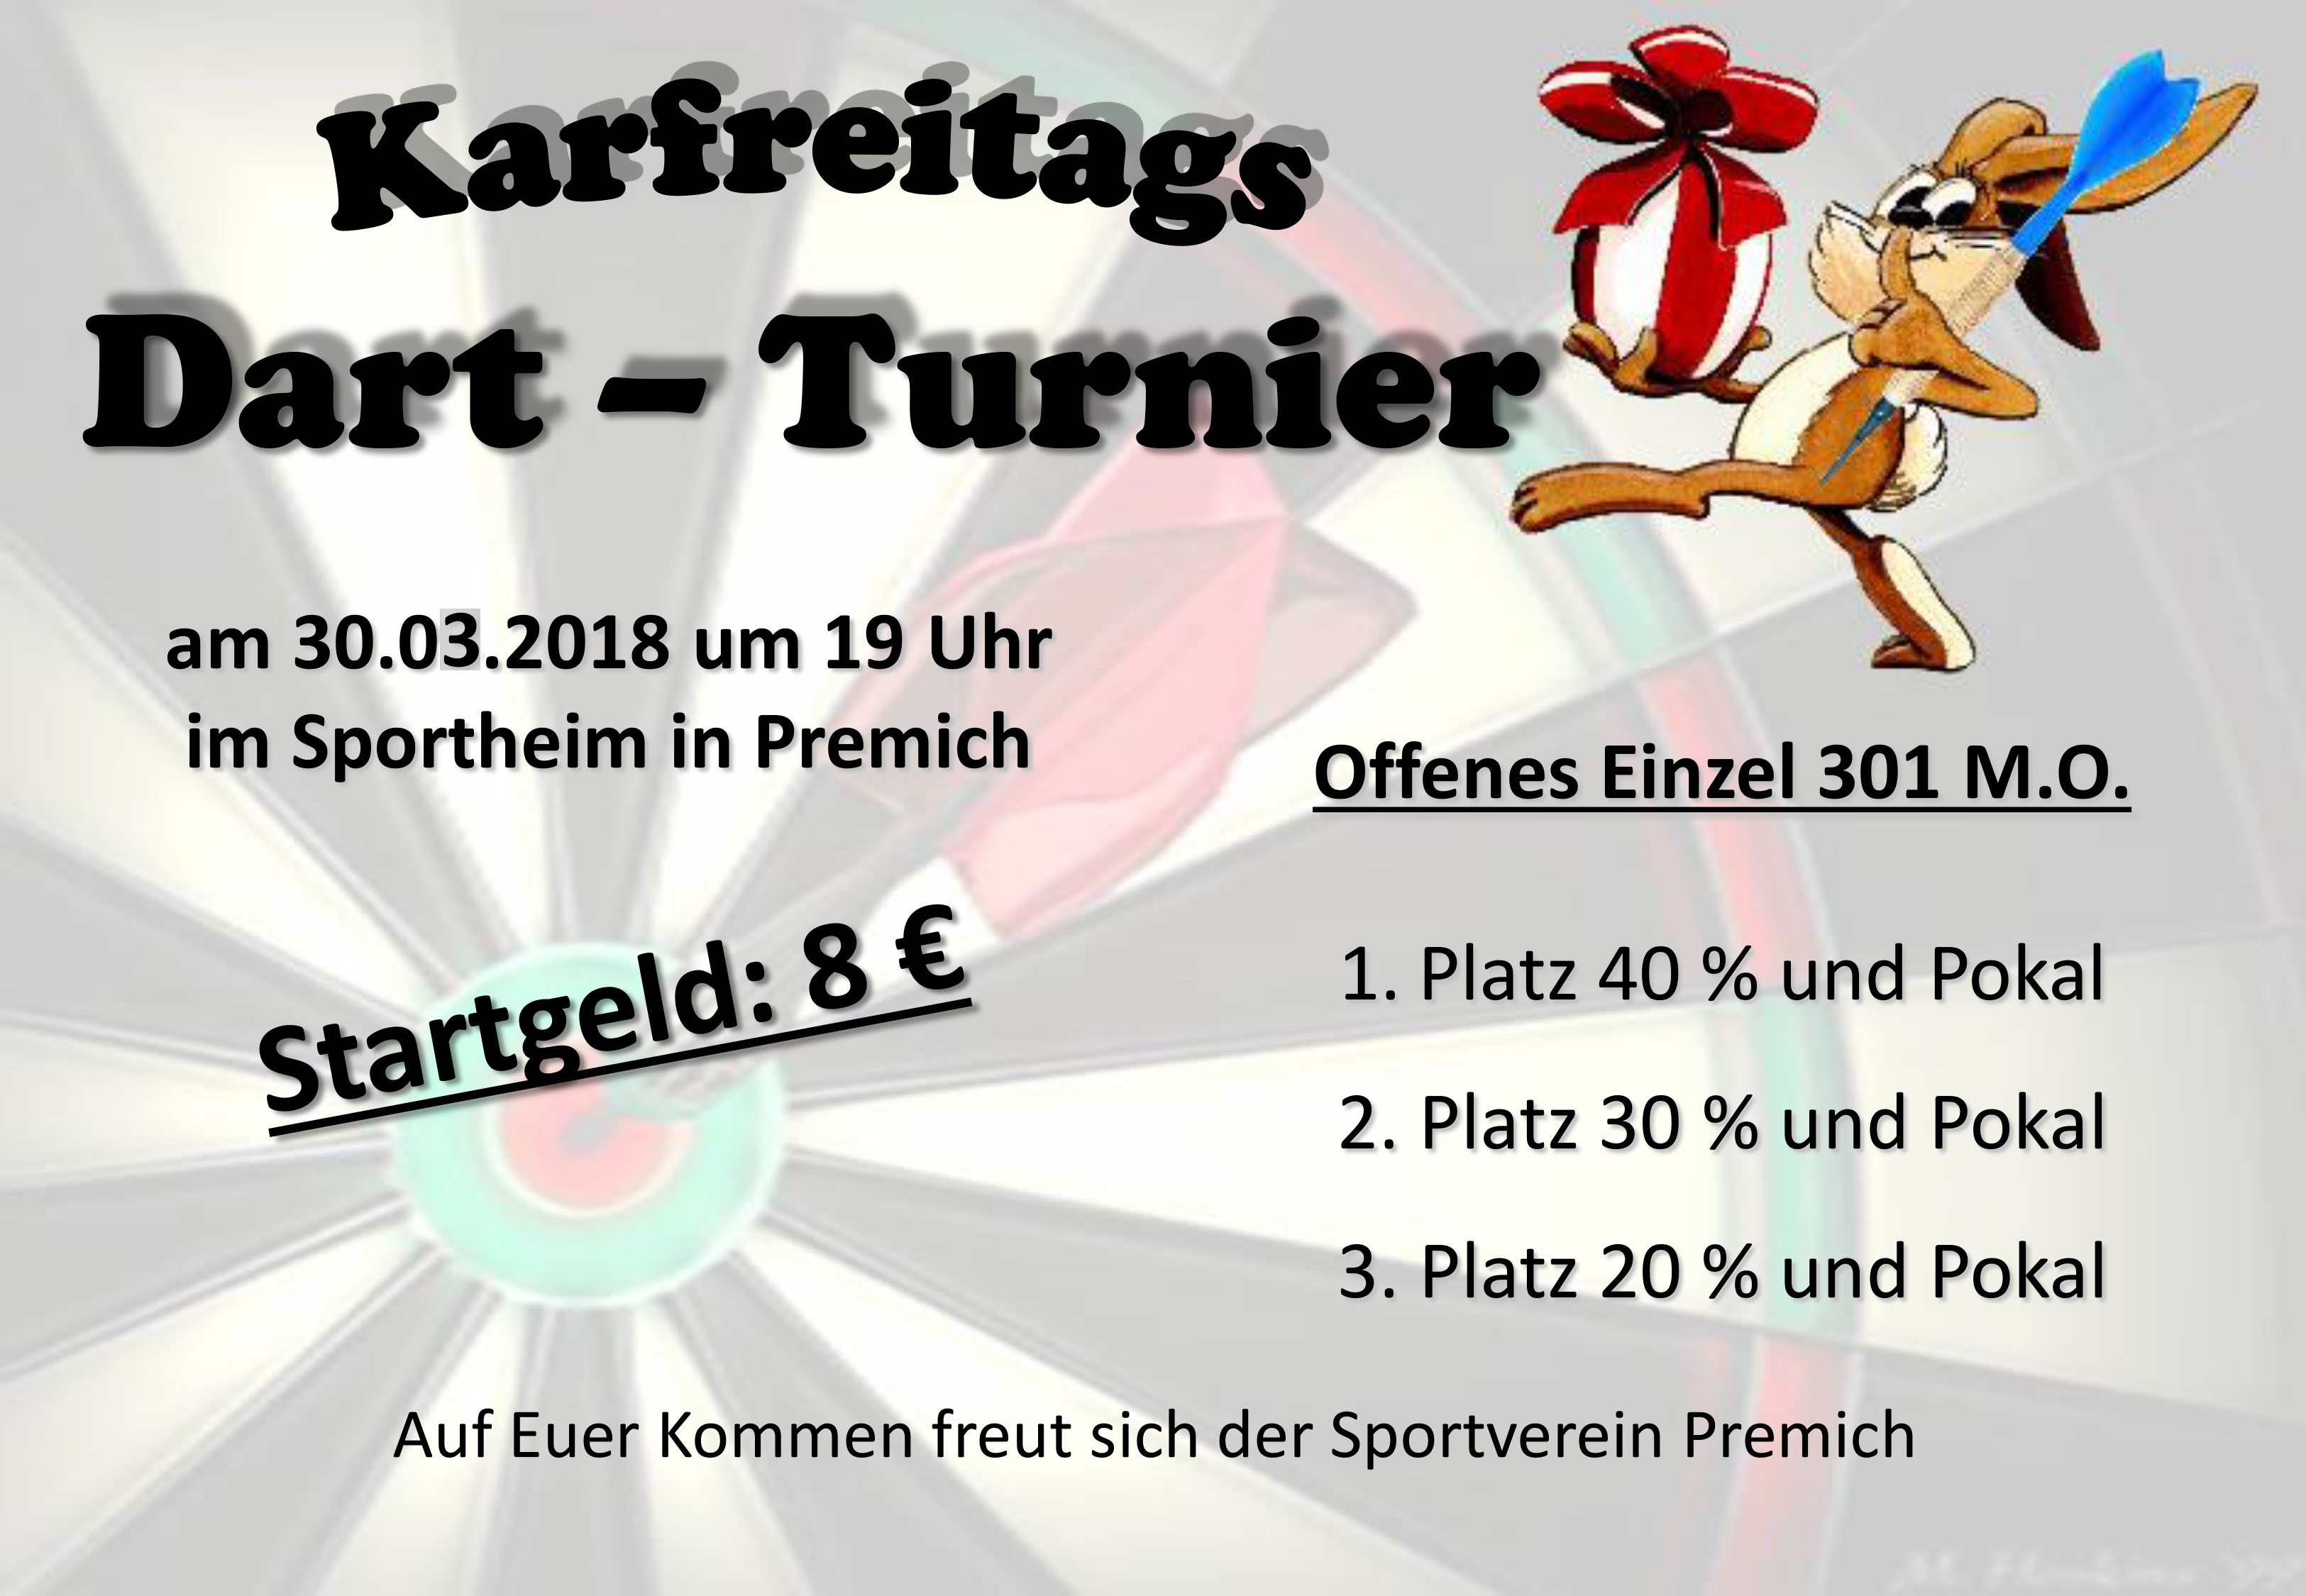 Karfreitags Dartturnier Sportheim Premich